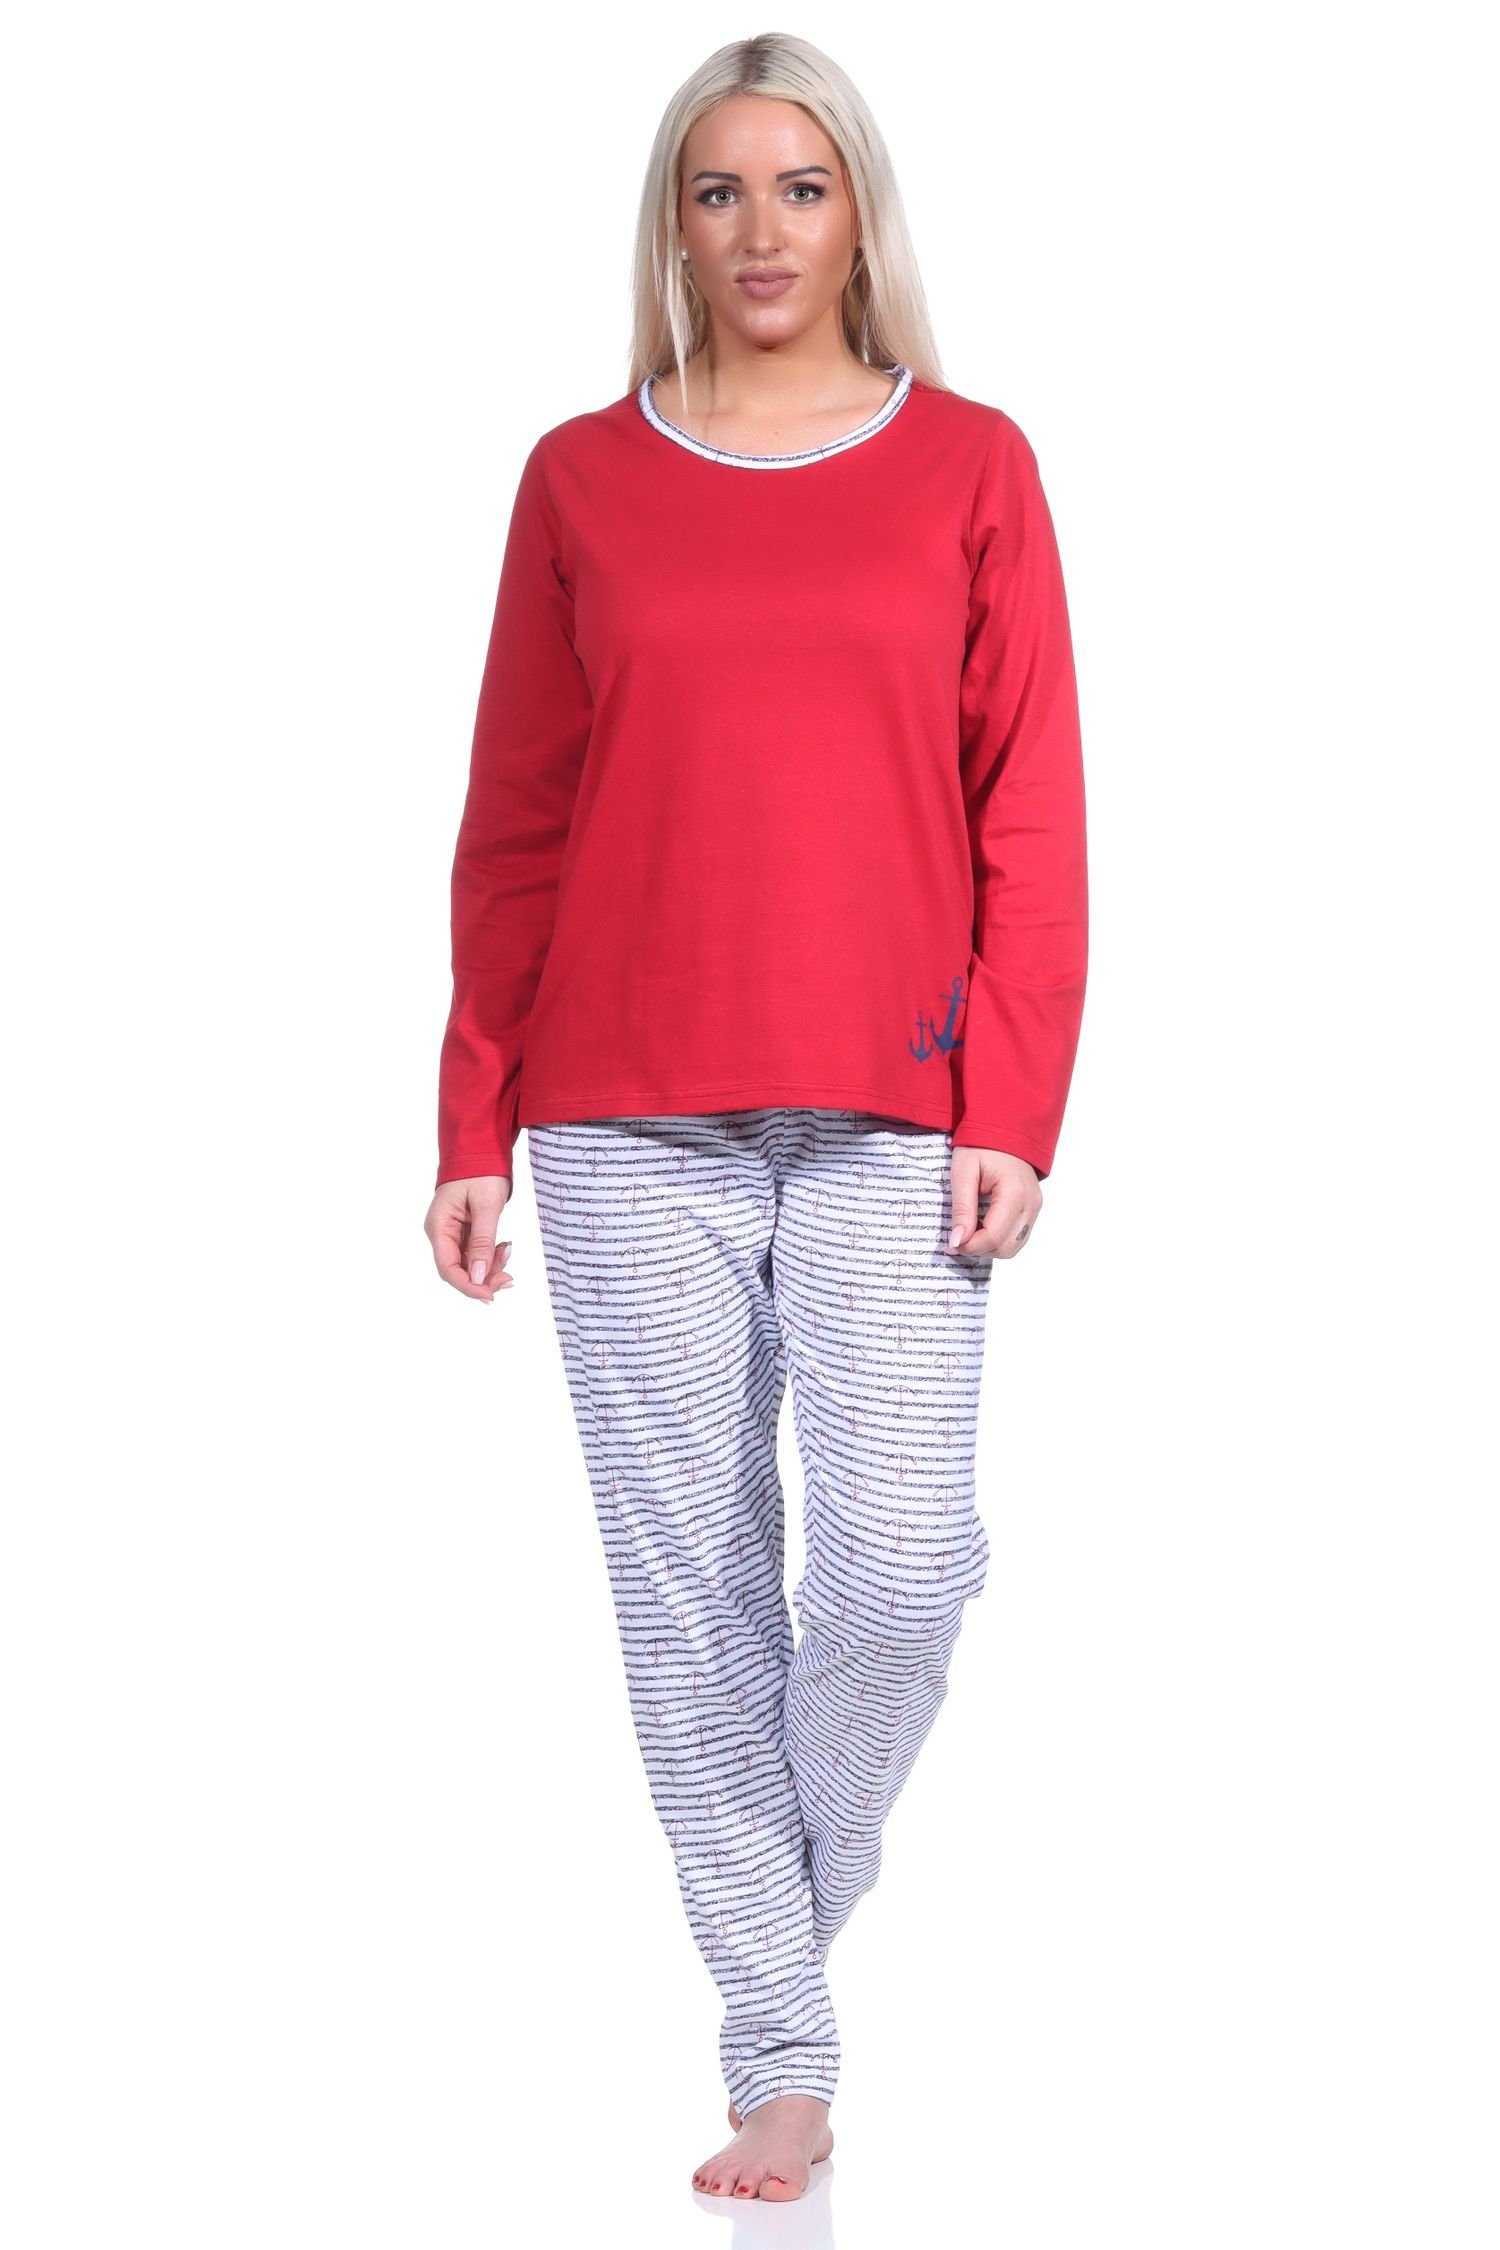 Normann Pyjama Damen Pyjama, langer Schlafanzug in Streifen Optik MARITIM rot | Pyjamas